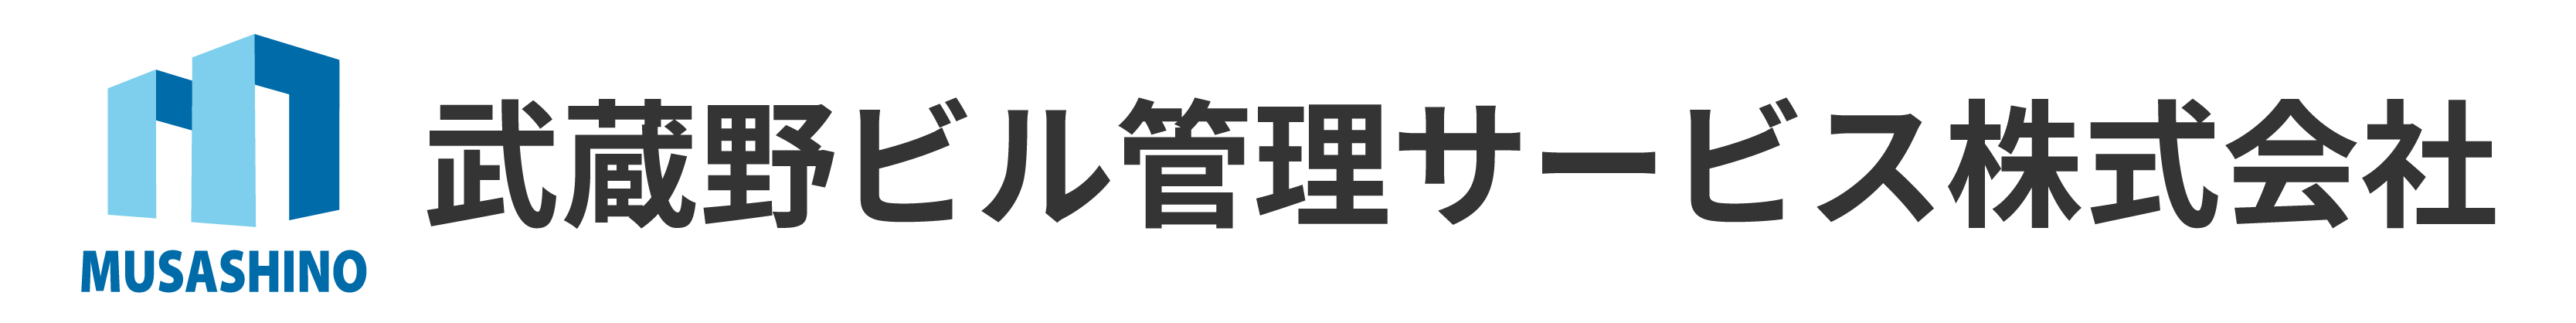 武蔵野ビル管理サービス ロゴ